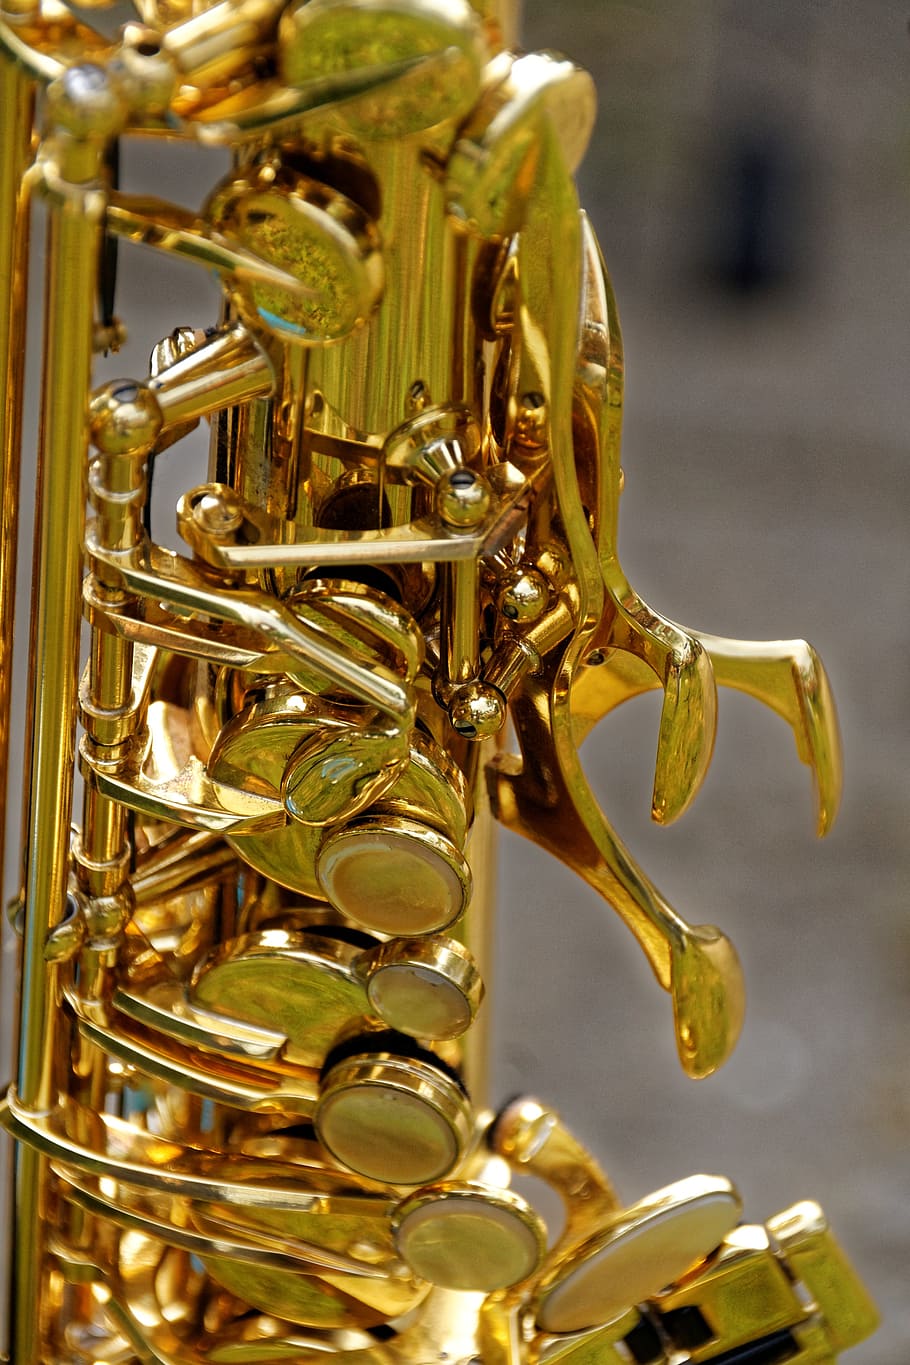 instrumento, saxofone, detalhe do saxofone, fechar-se, analógico, banda, música, fechar, musical Instrumento, jazz Música